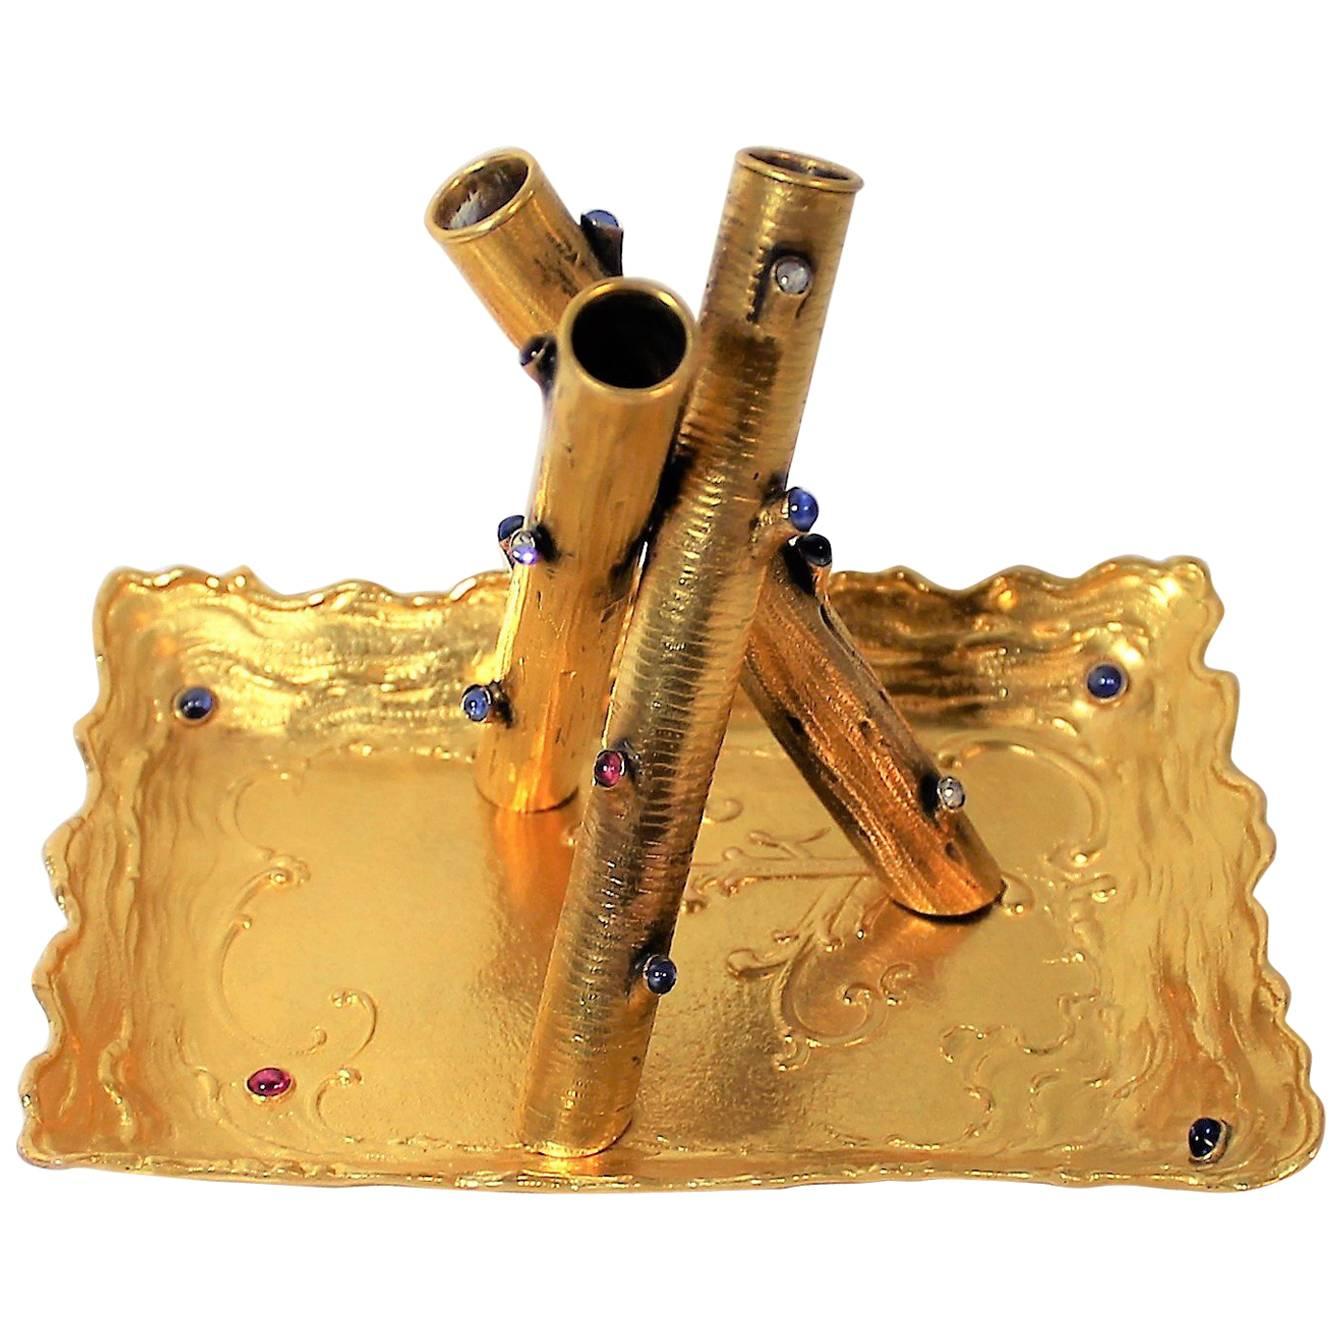 14-Karat Gold Stifthalter und Tablett mit Diamanten, Rubinen und Saphiren